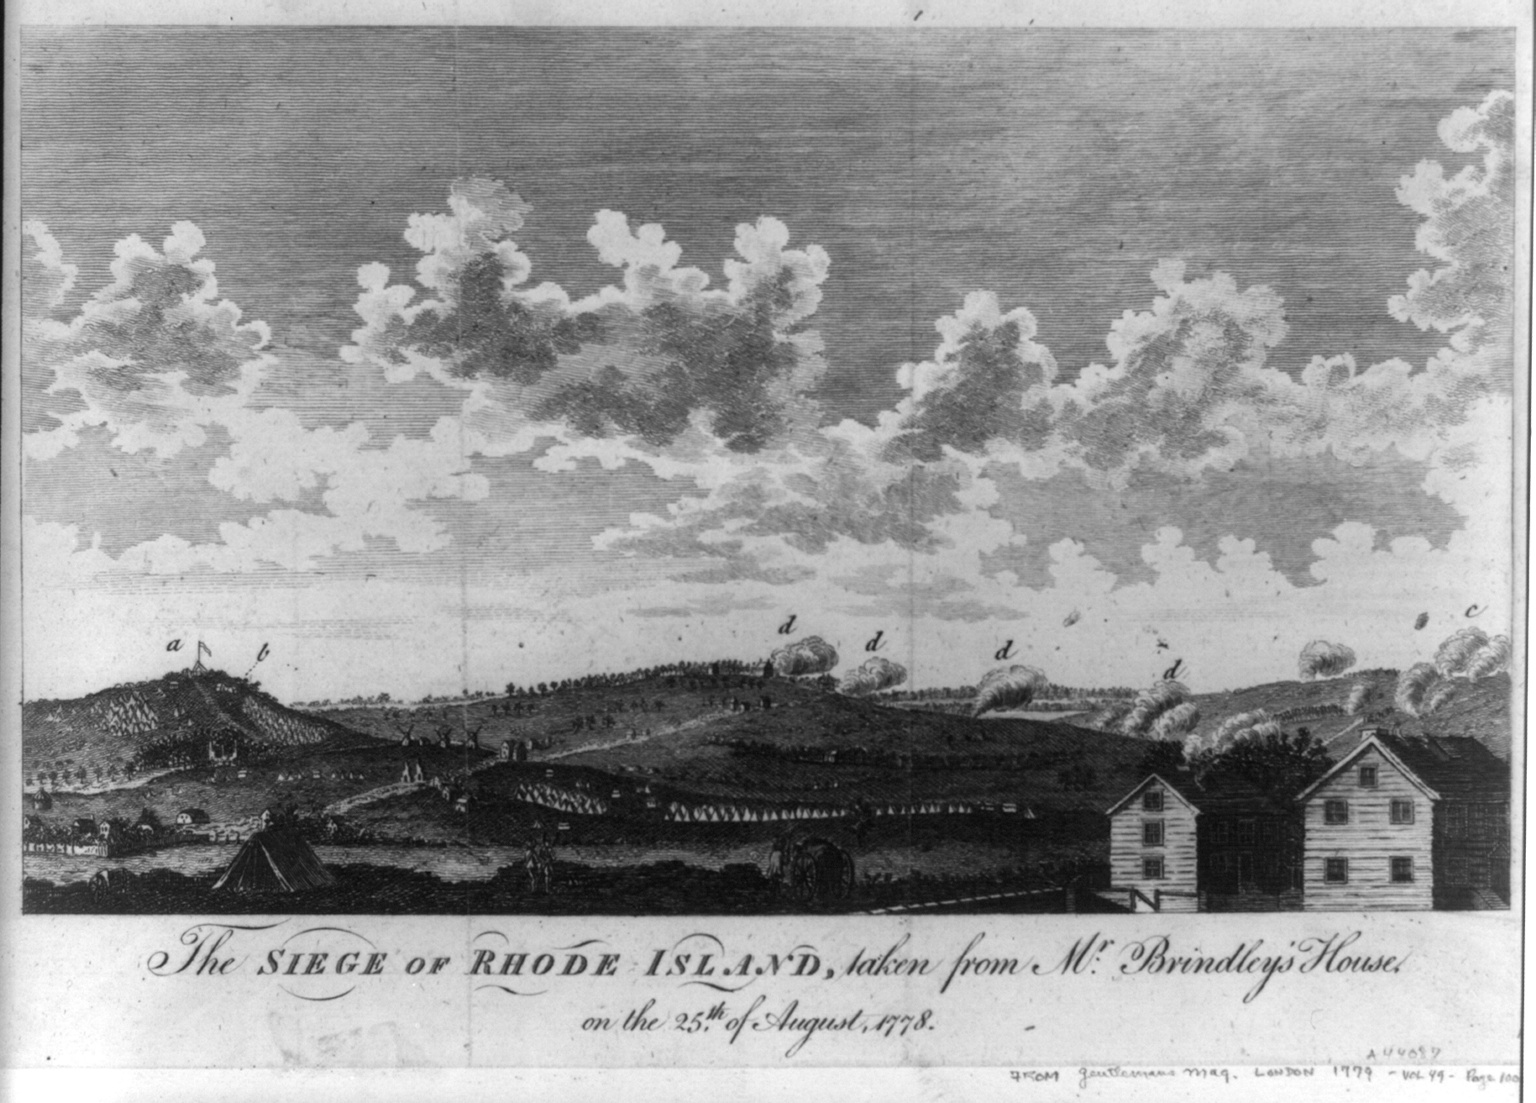 Battle of Rhode Island - Wikipedia